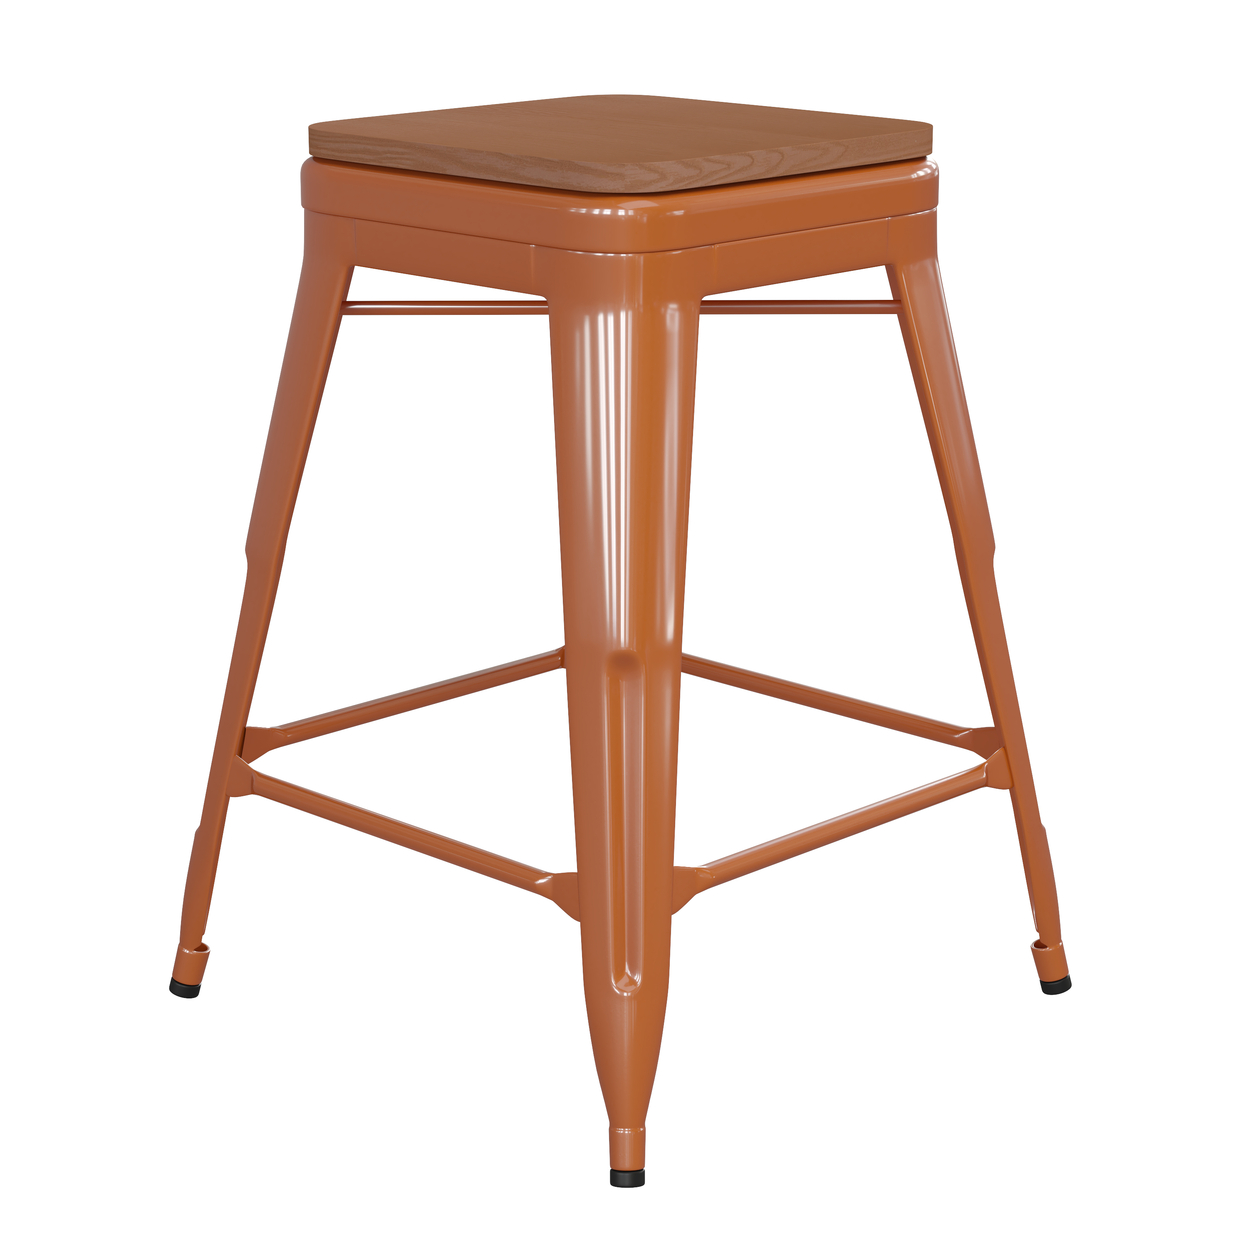 24 Inch Metal Stool, Teak Brown Wood Seat, Rust Orange